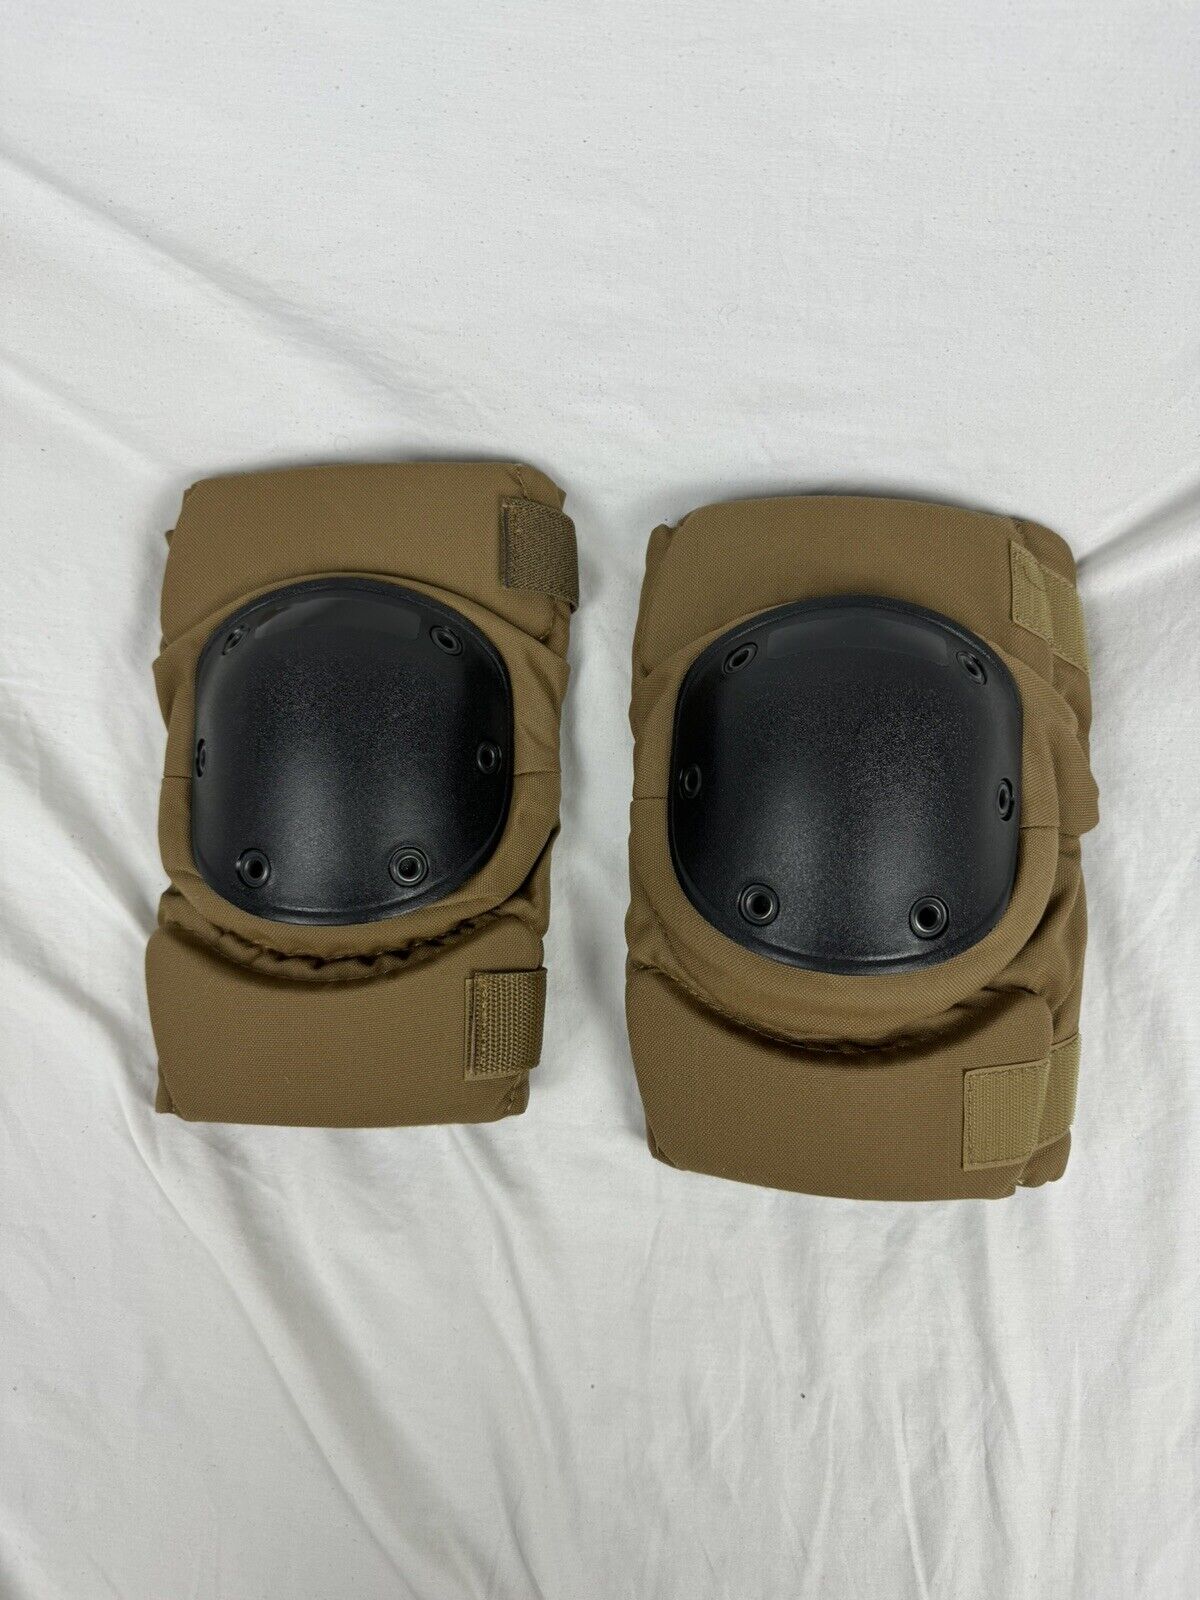 U.S. Military Army Knee Pads Coyote Brown/Black- Size Medium (Pair)